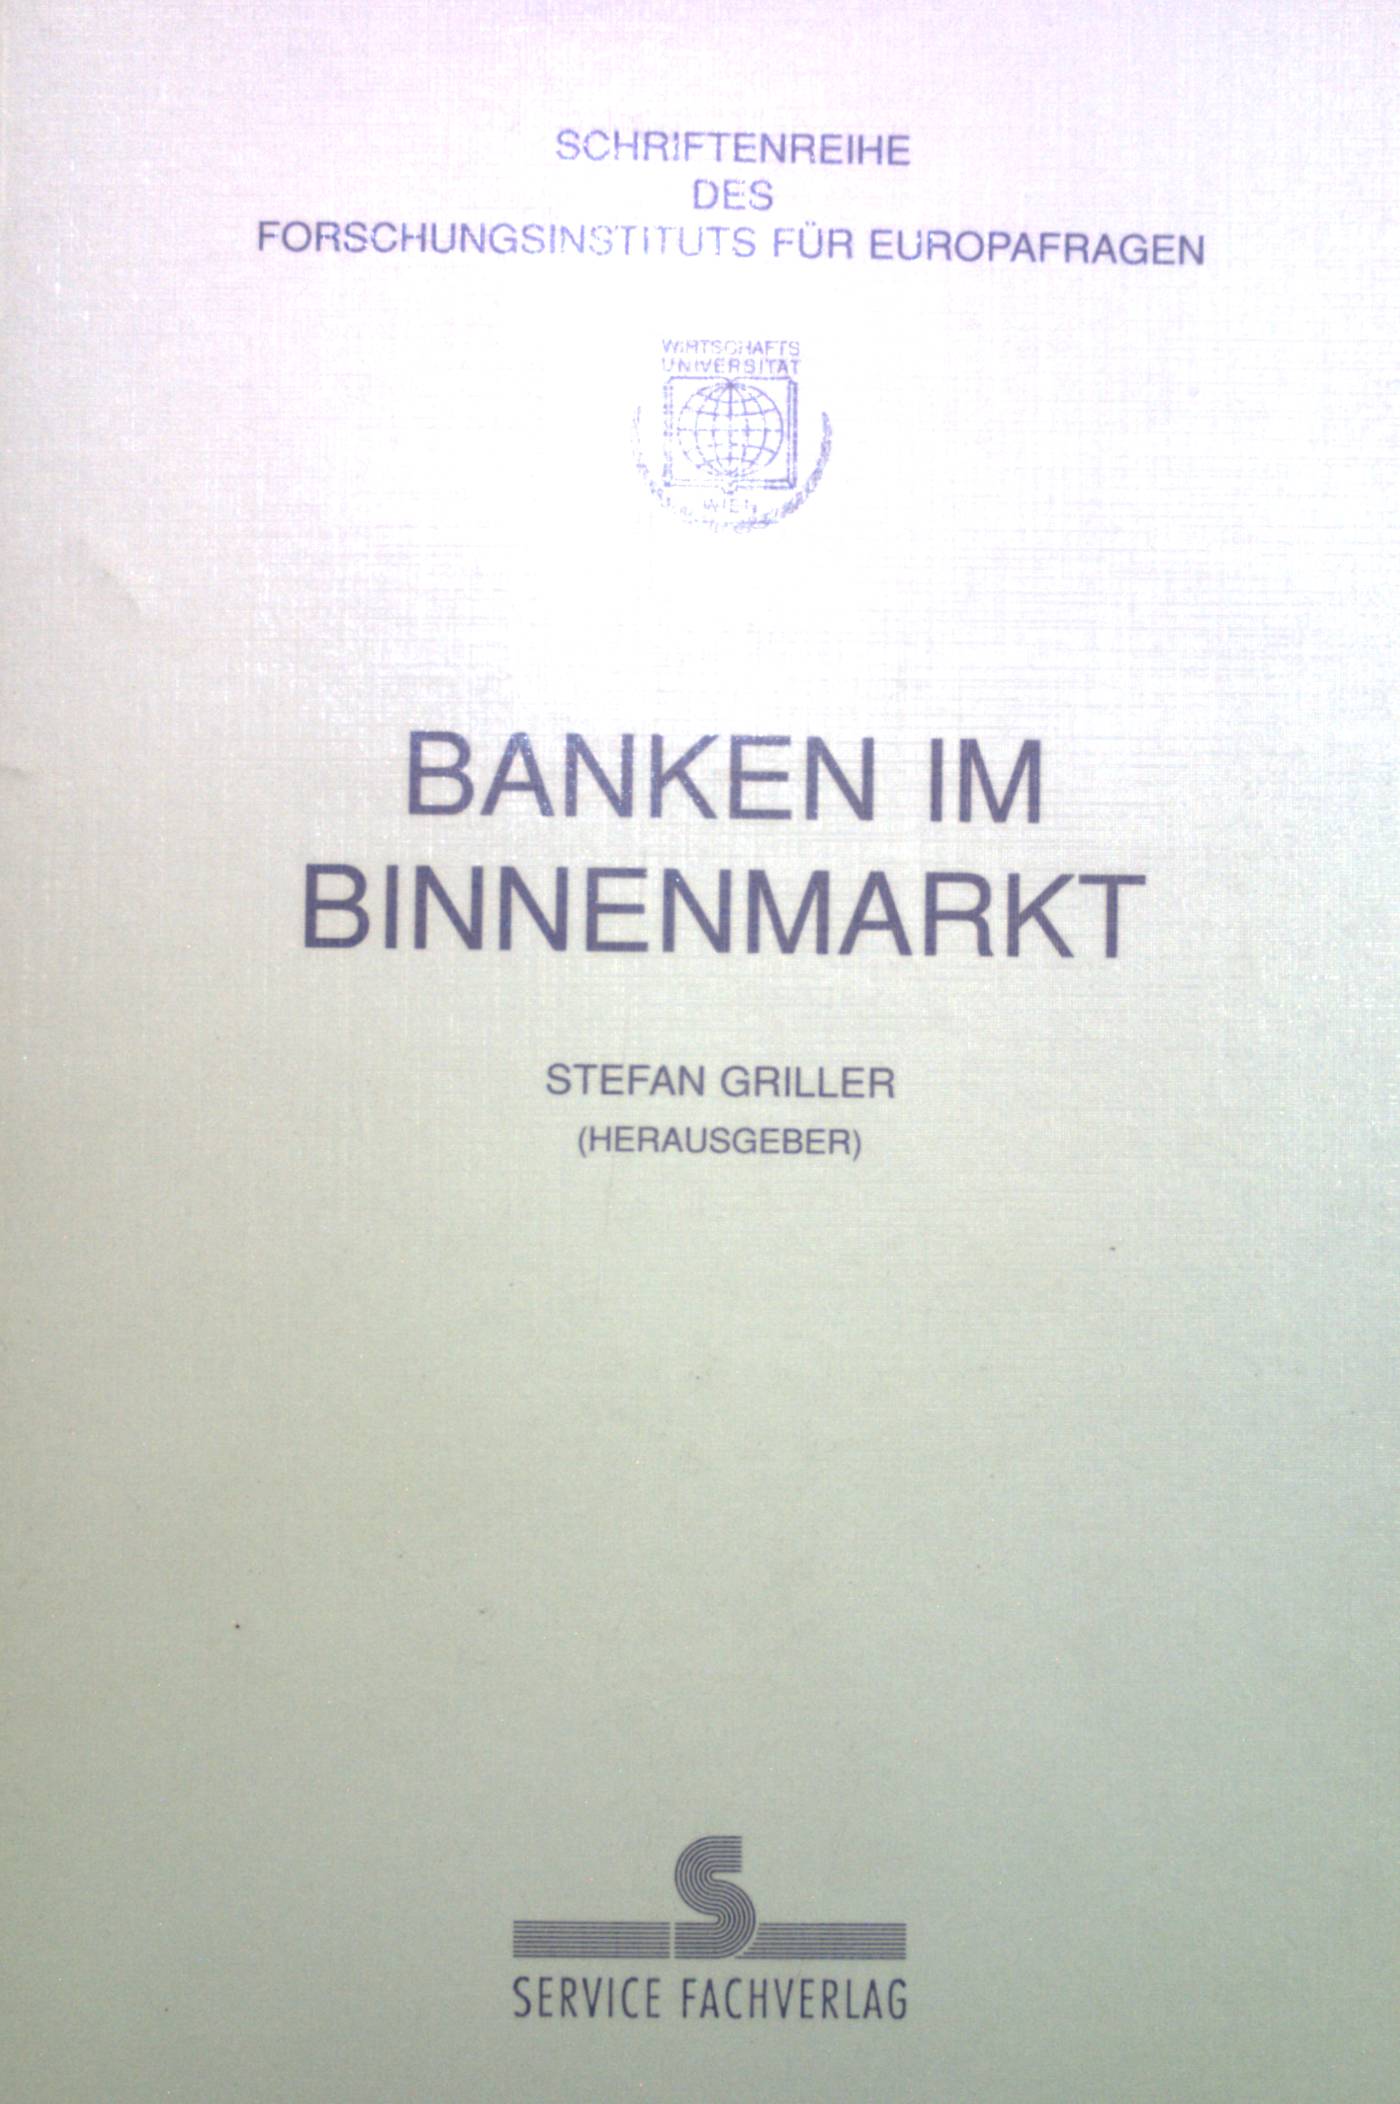 Banken im Binnenmarkt. Schriftenreihe des Forschungsinstituts für Europafragen ; Bd. 7 - Griller, Stefan und Thomas Eilmansberger